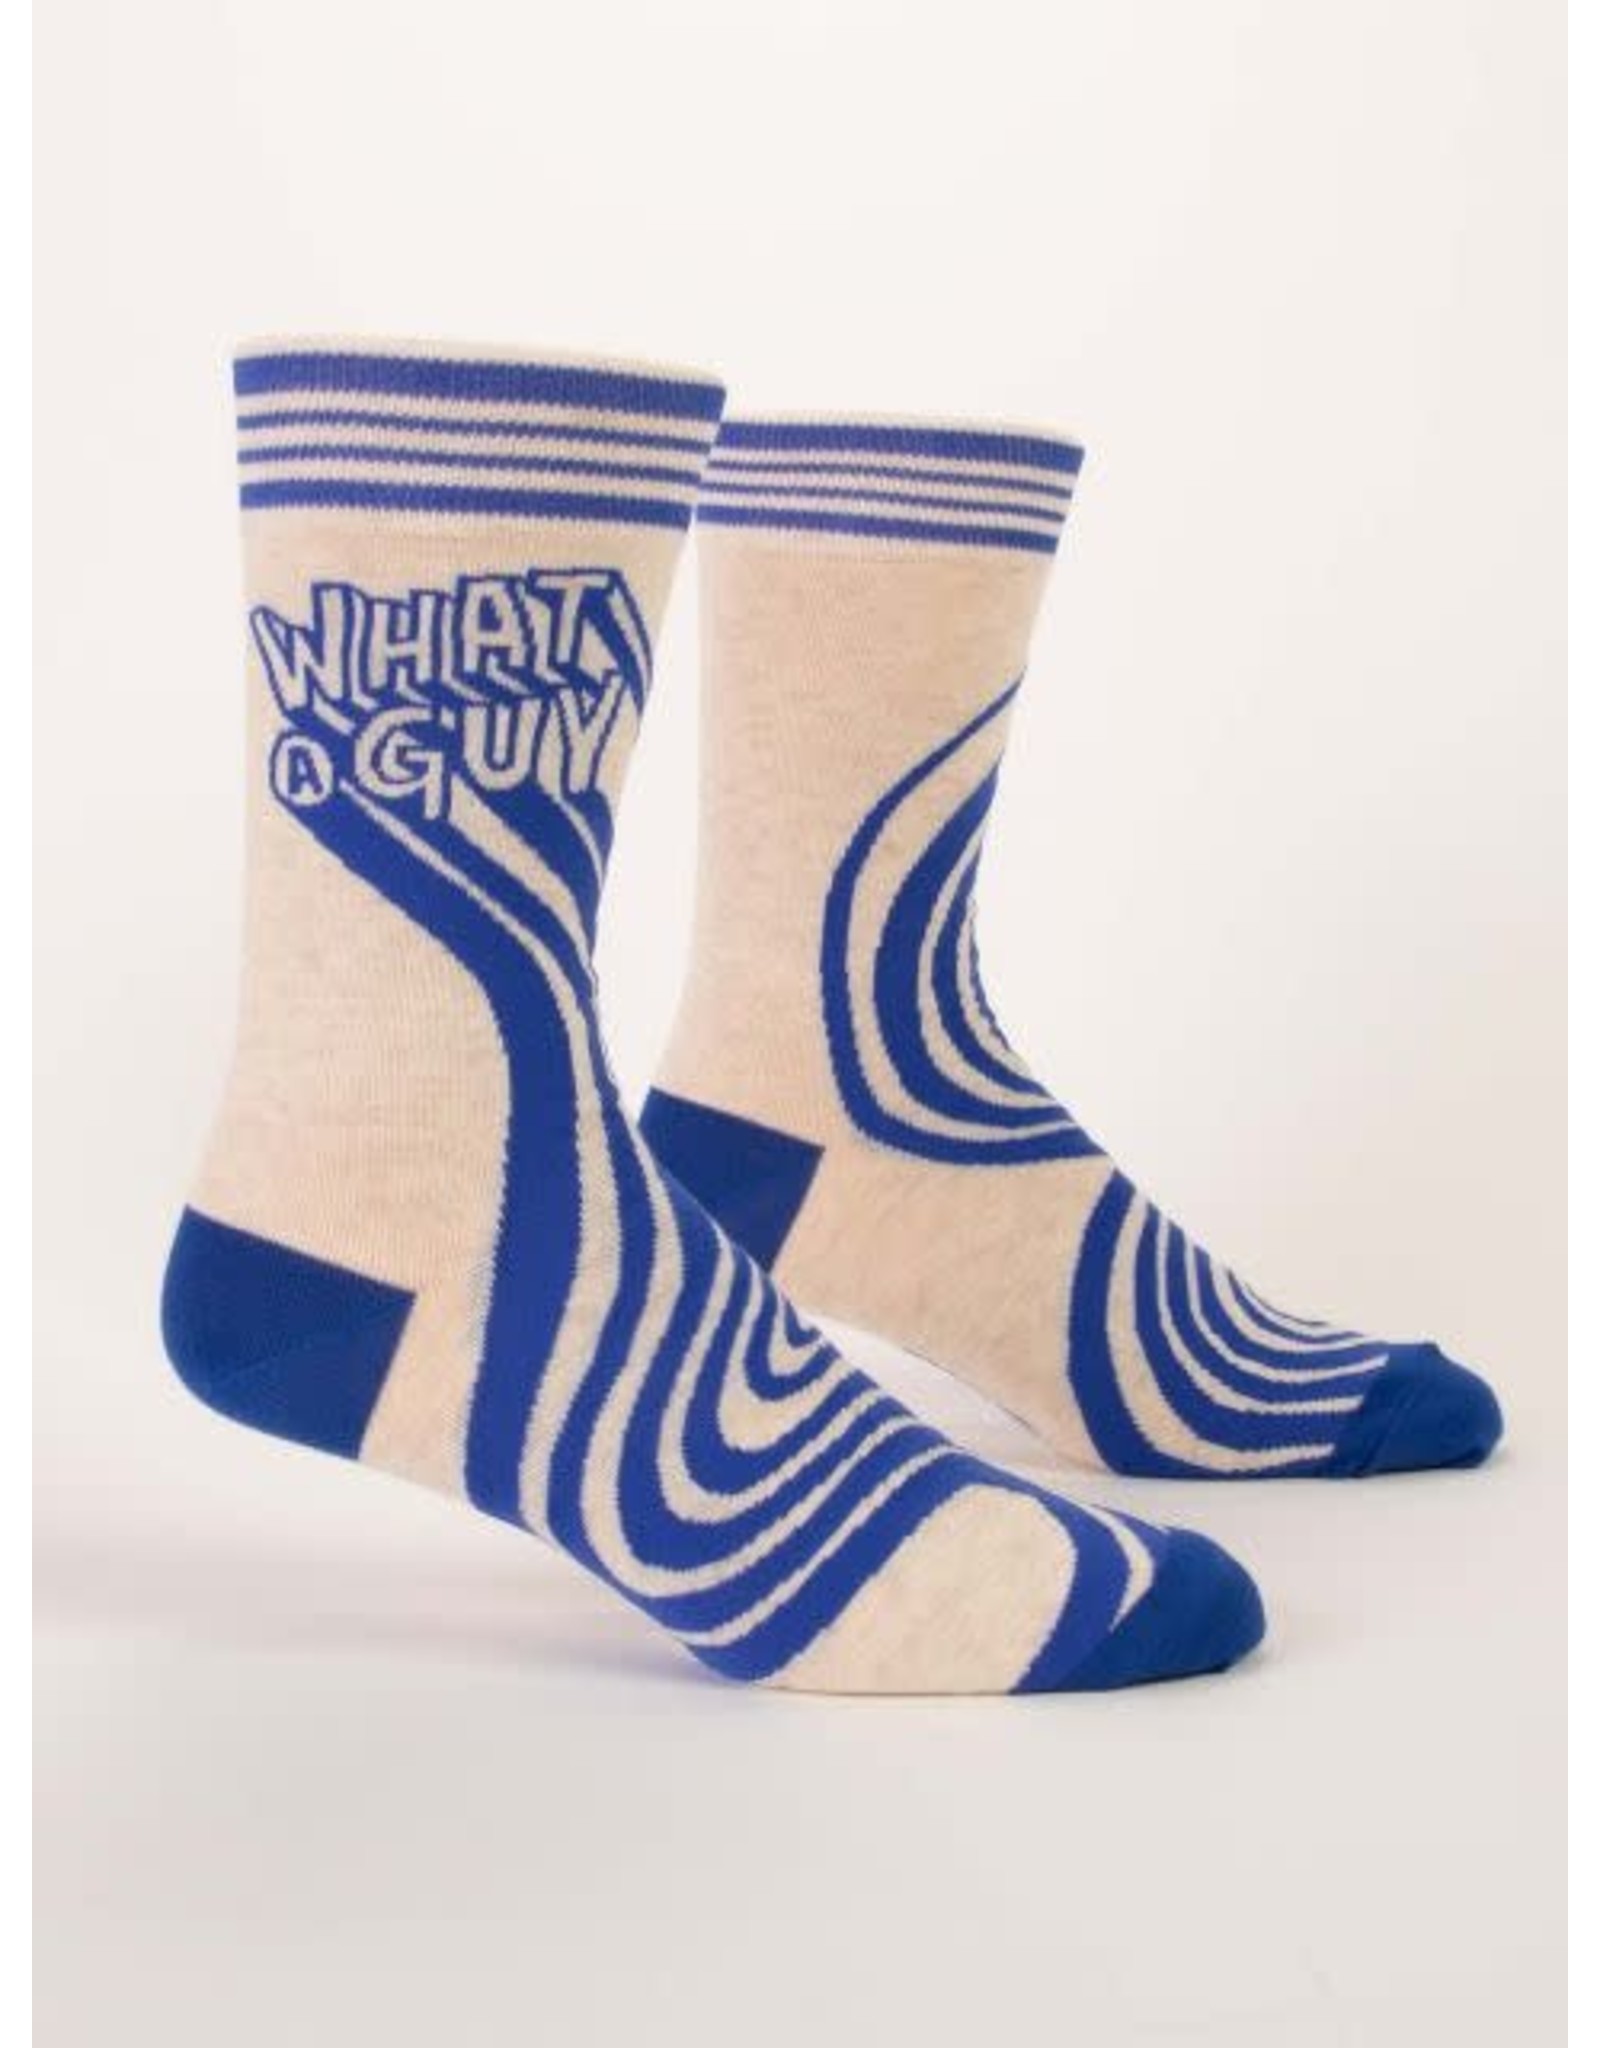 Blue Q - Men's Socks / What a Guy